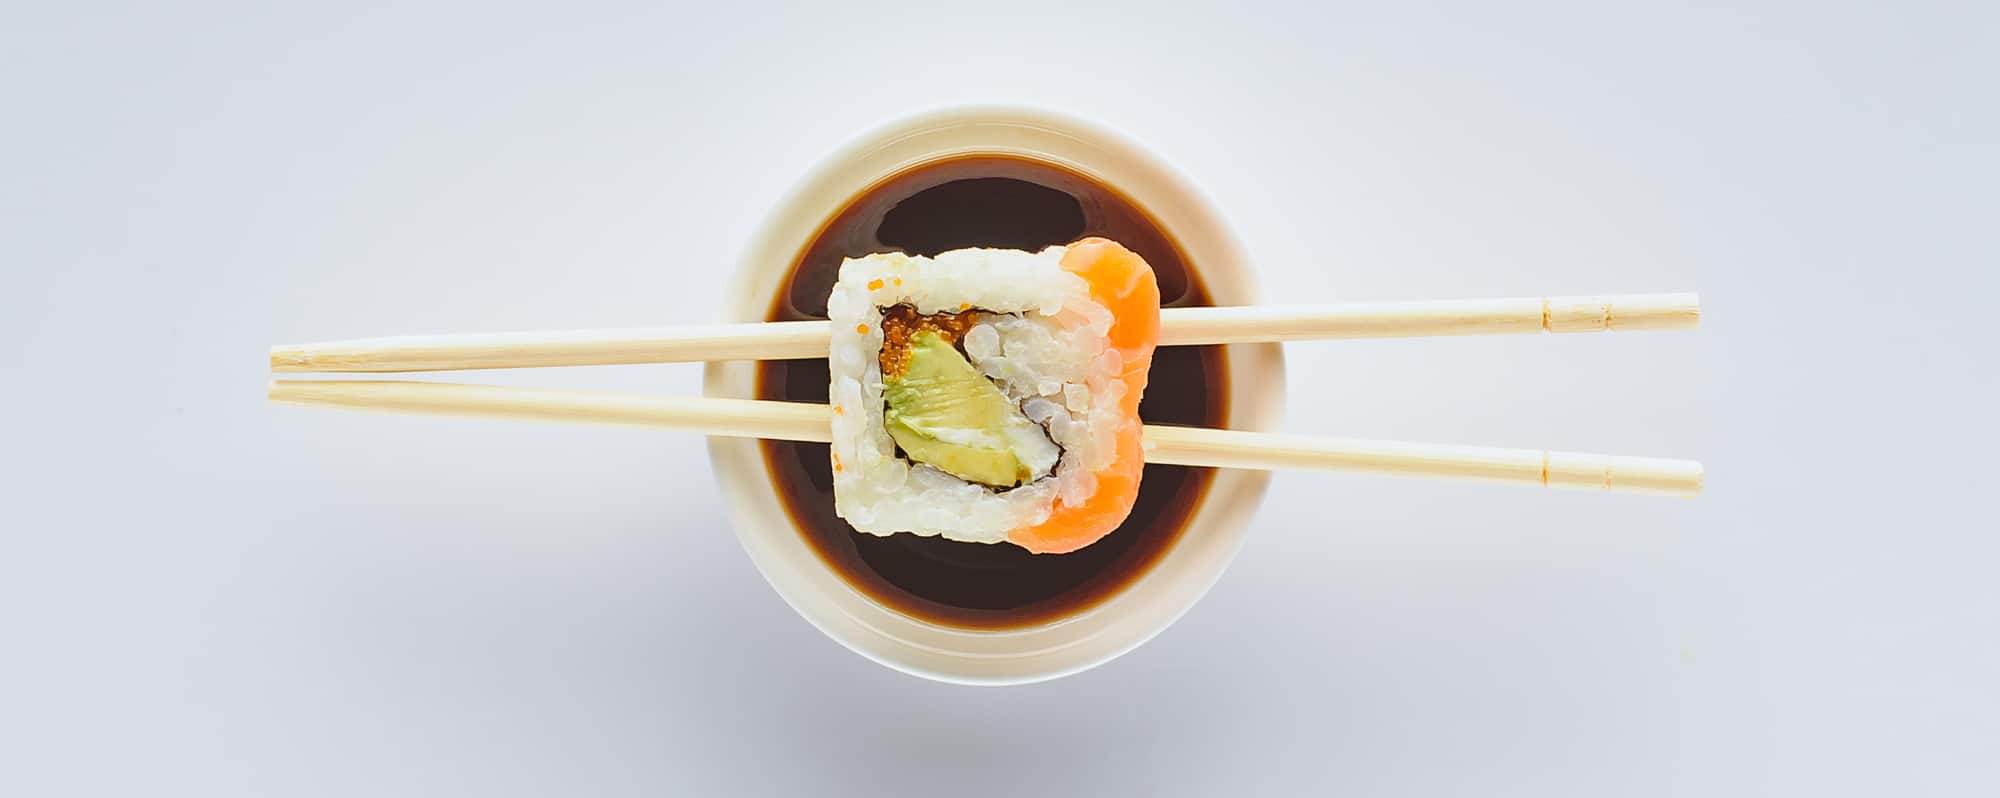 Sushi & chop sticks, det æstetiske og velsmagende japanske køkken